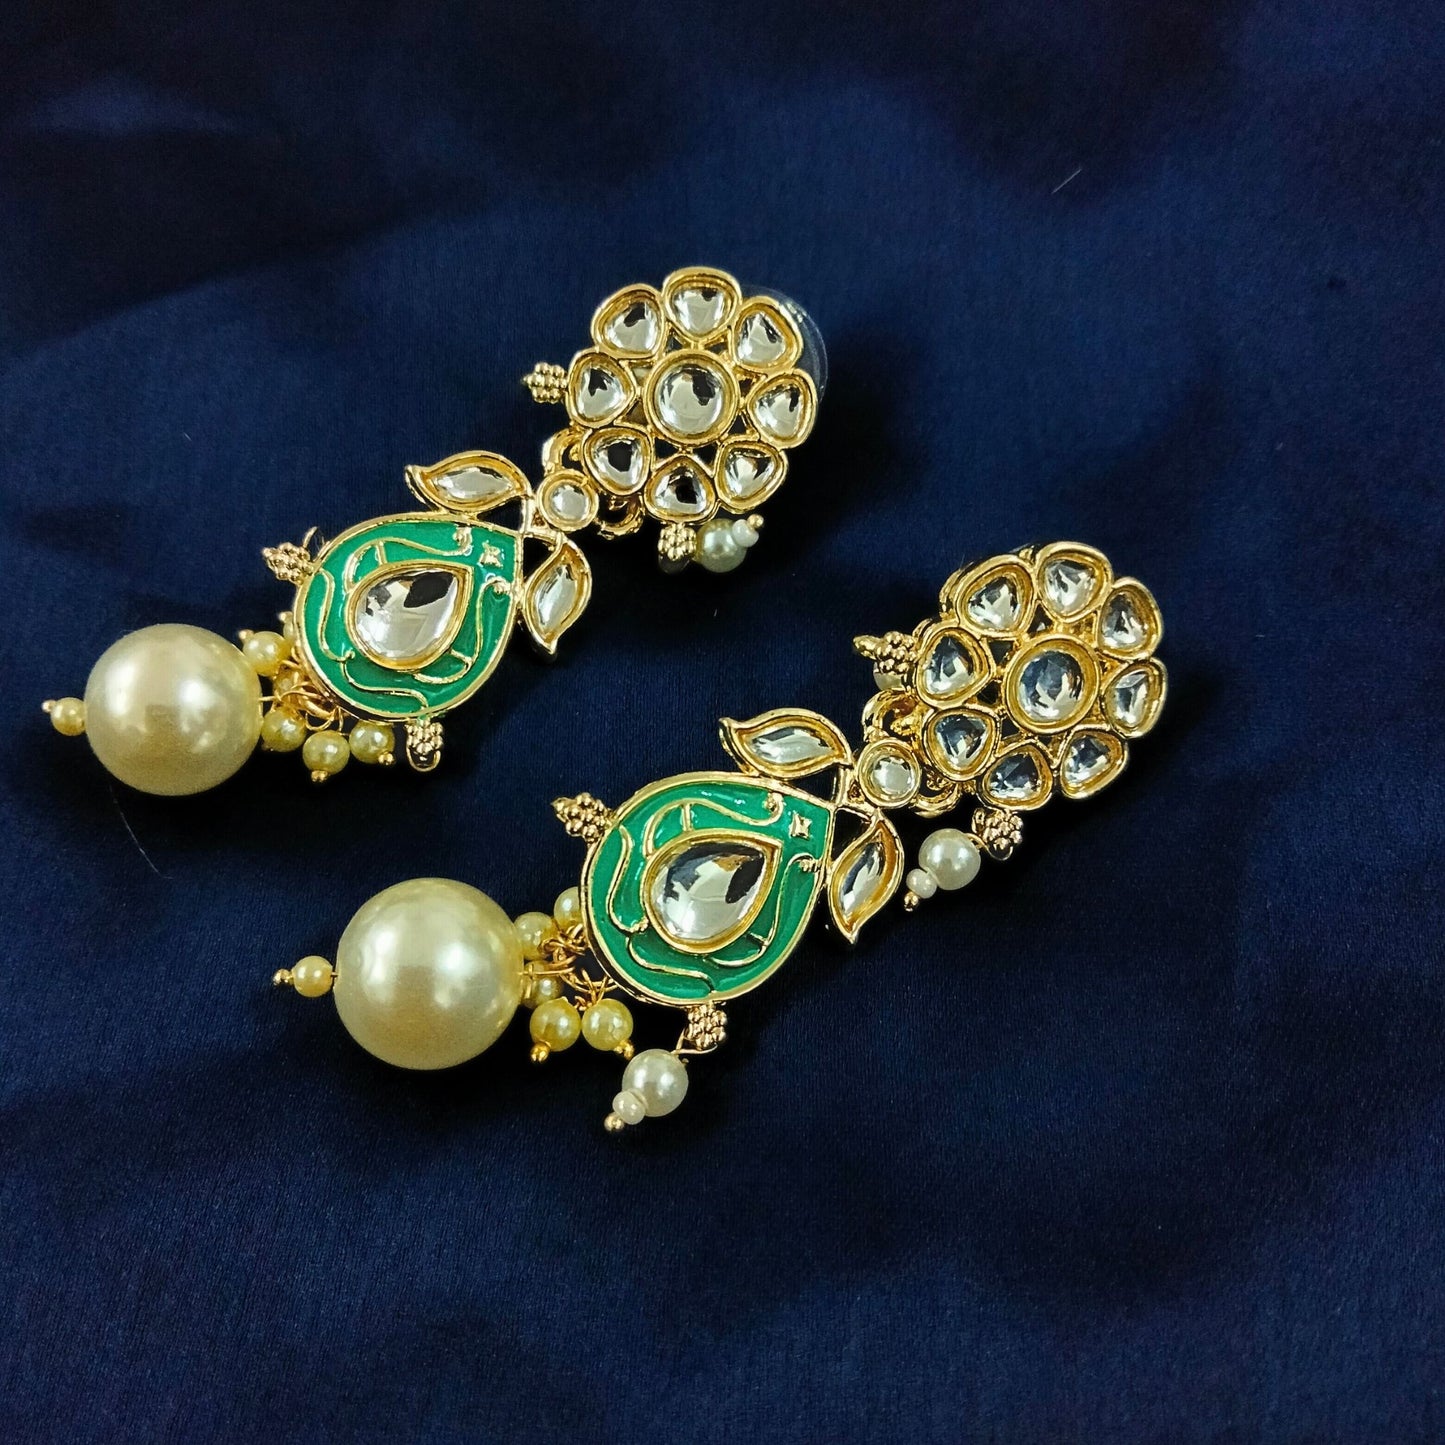 Bdiva 18K Gold Plated Green Kundan Meenakari Drop Earrings with Semi Cultured Pearls.